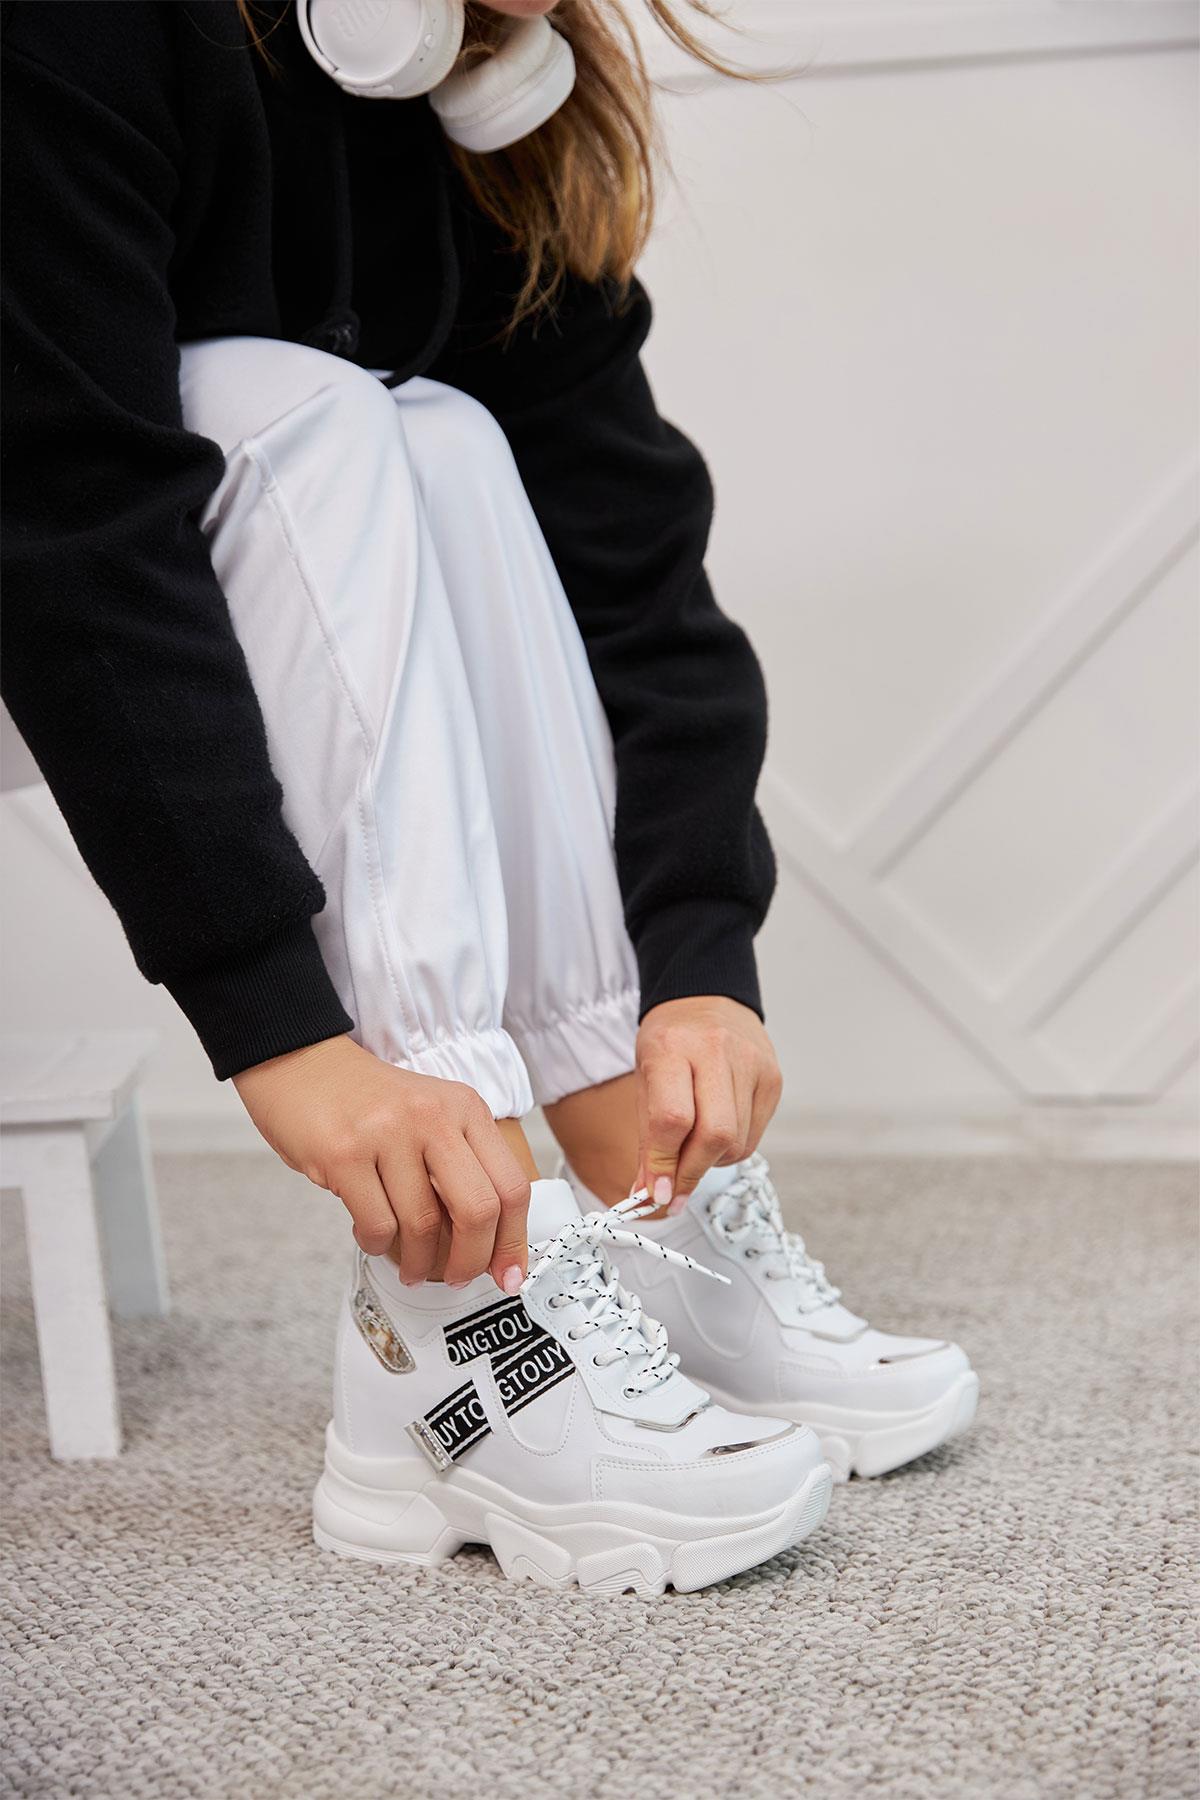 Teros Beyaz Gizli Dolgu Topuklu Kalın Taban Kadın Spor Ayakkabı Bot